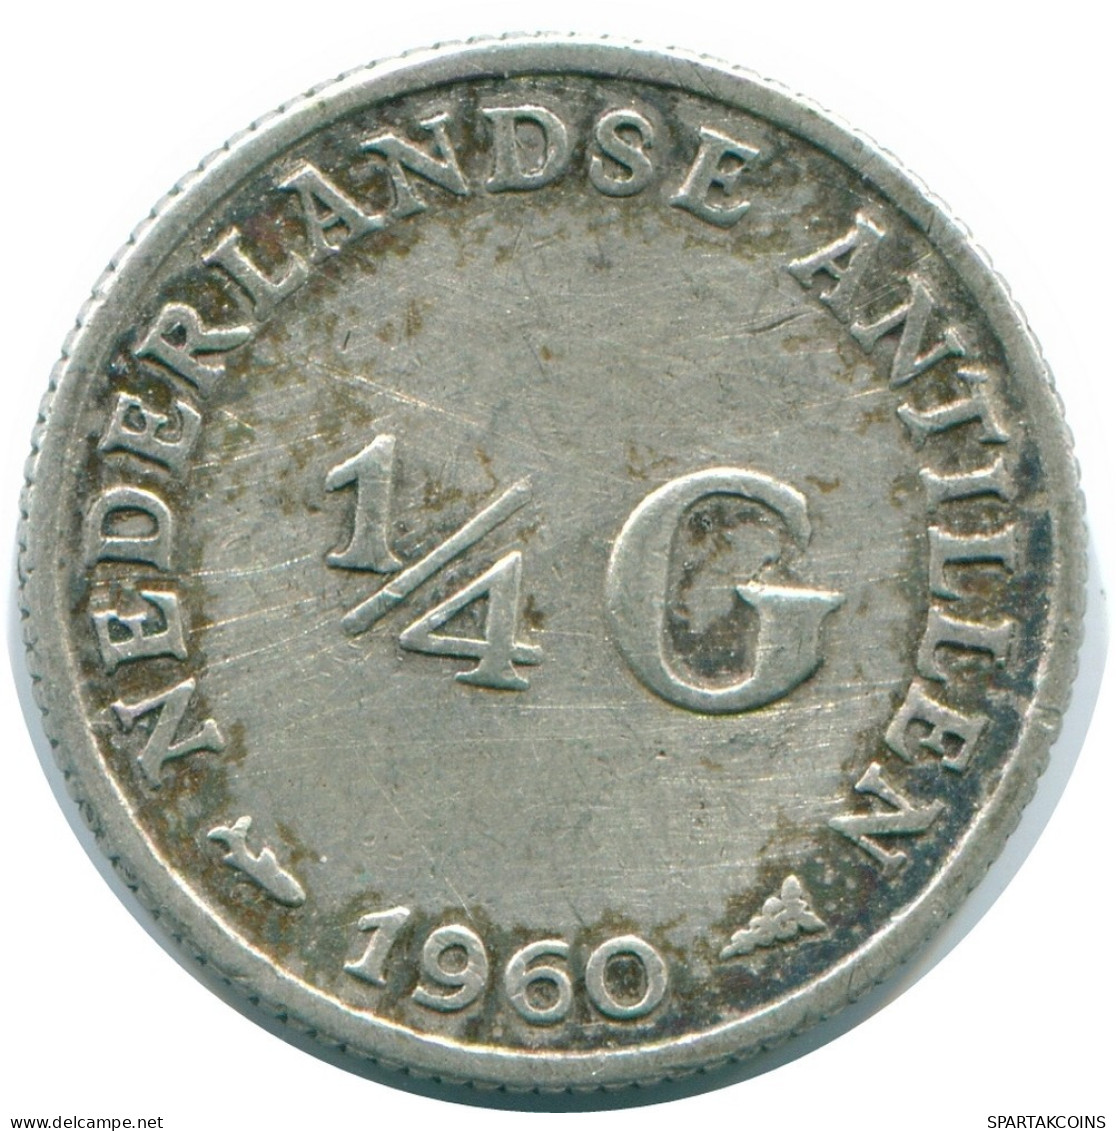 1/4 GULDEN 1960 NIEDERLÄNDISCHE ANTILLEN SILBER Koloniale Münze #NL11070.4.D.A - Antilles Néerlandaises